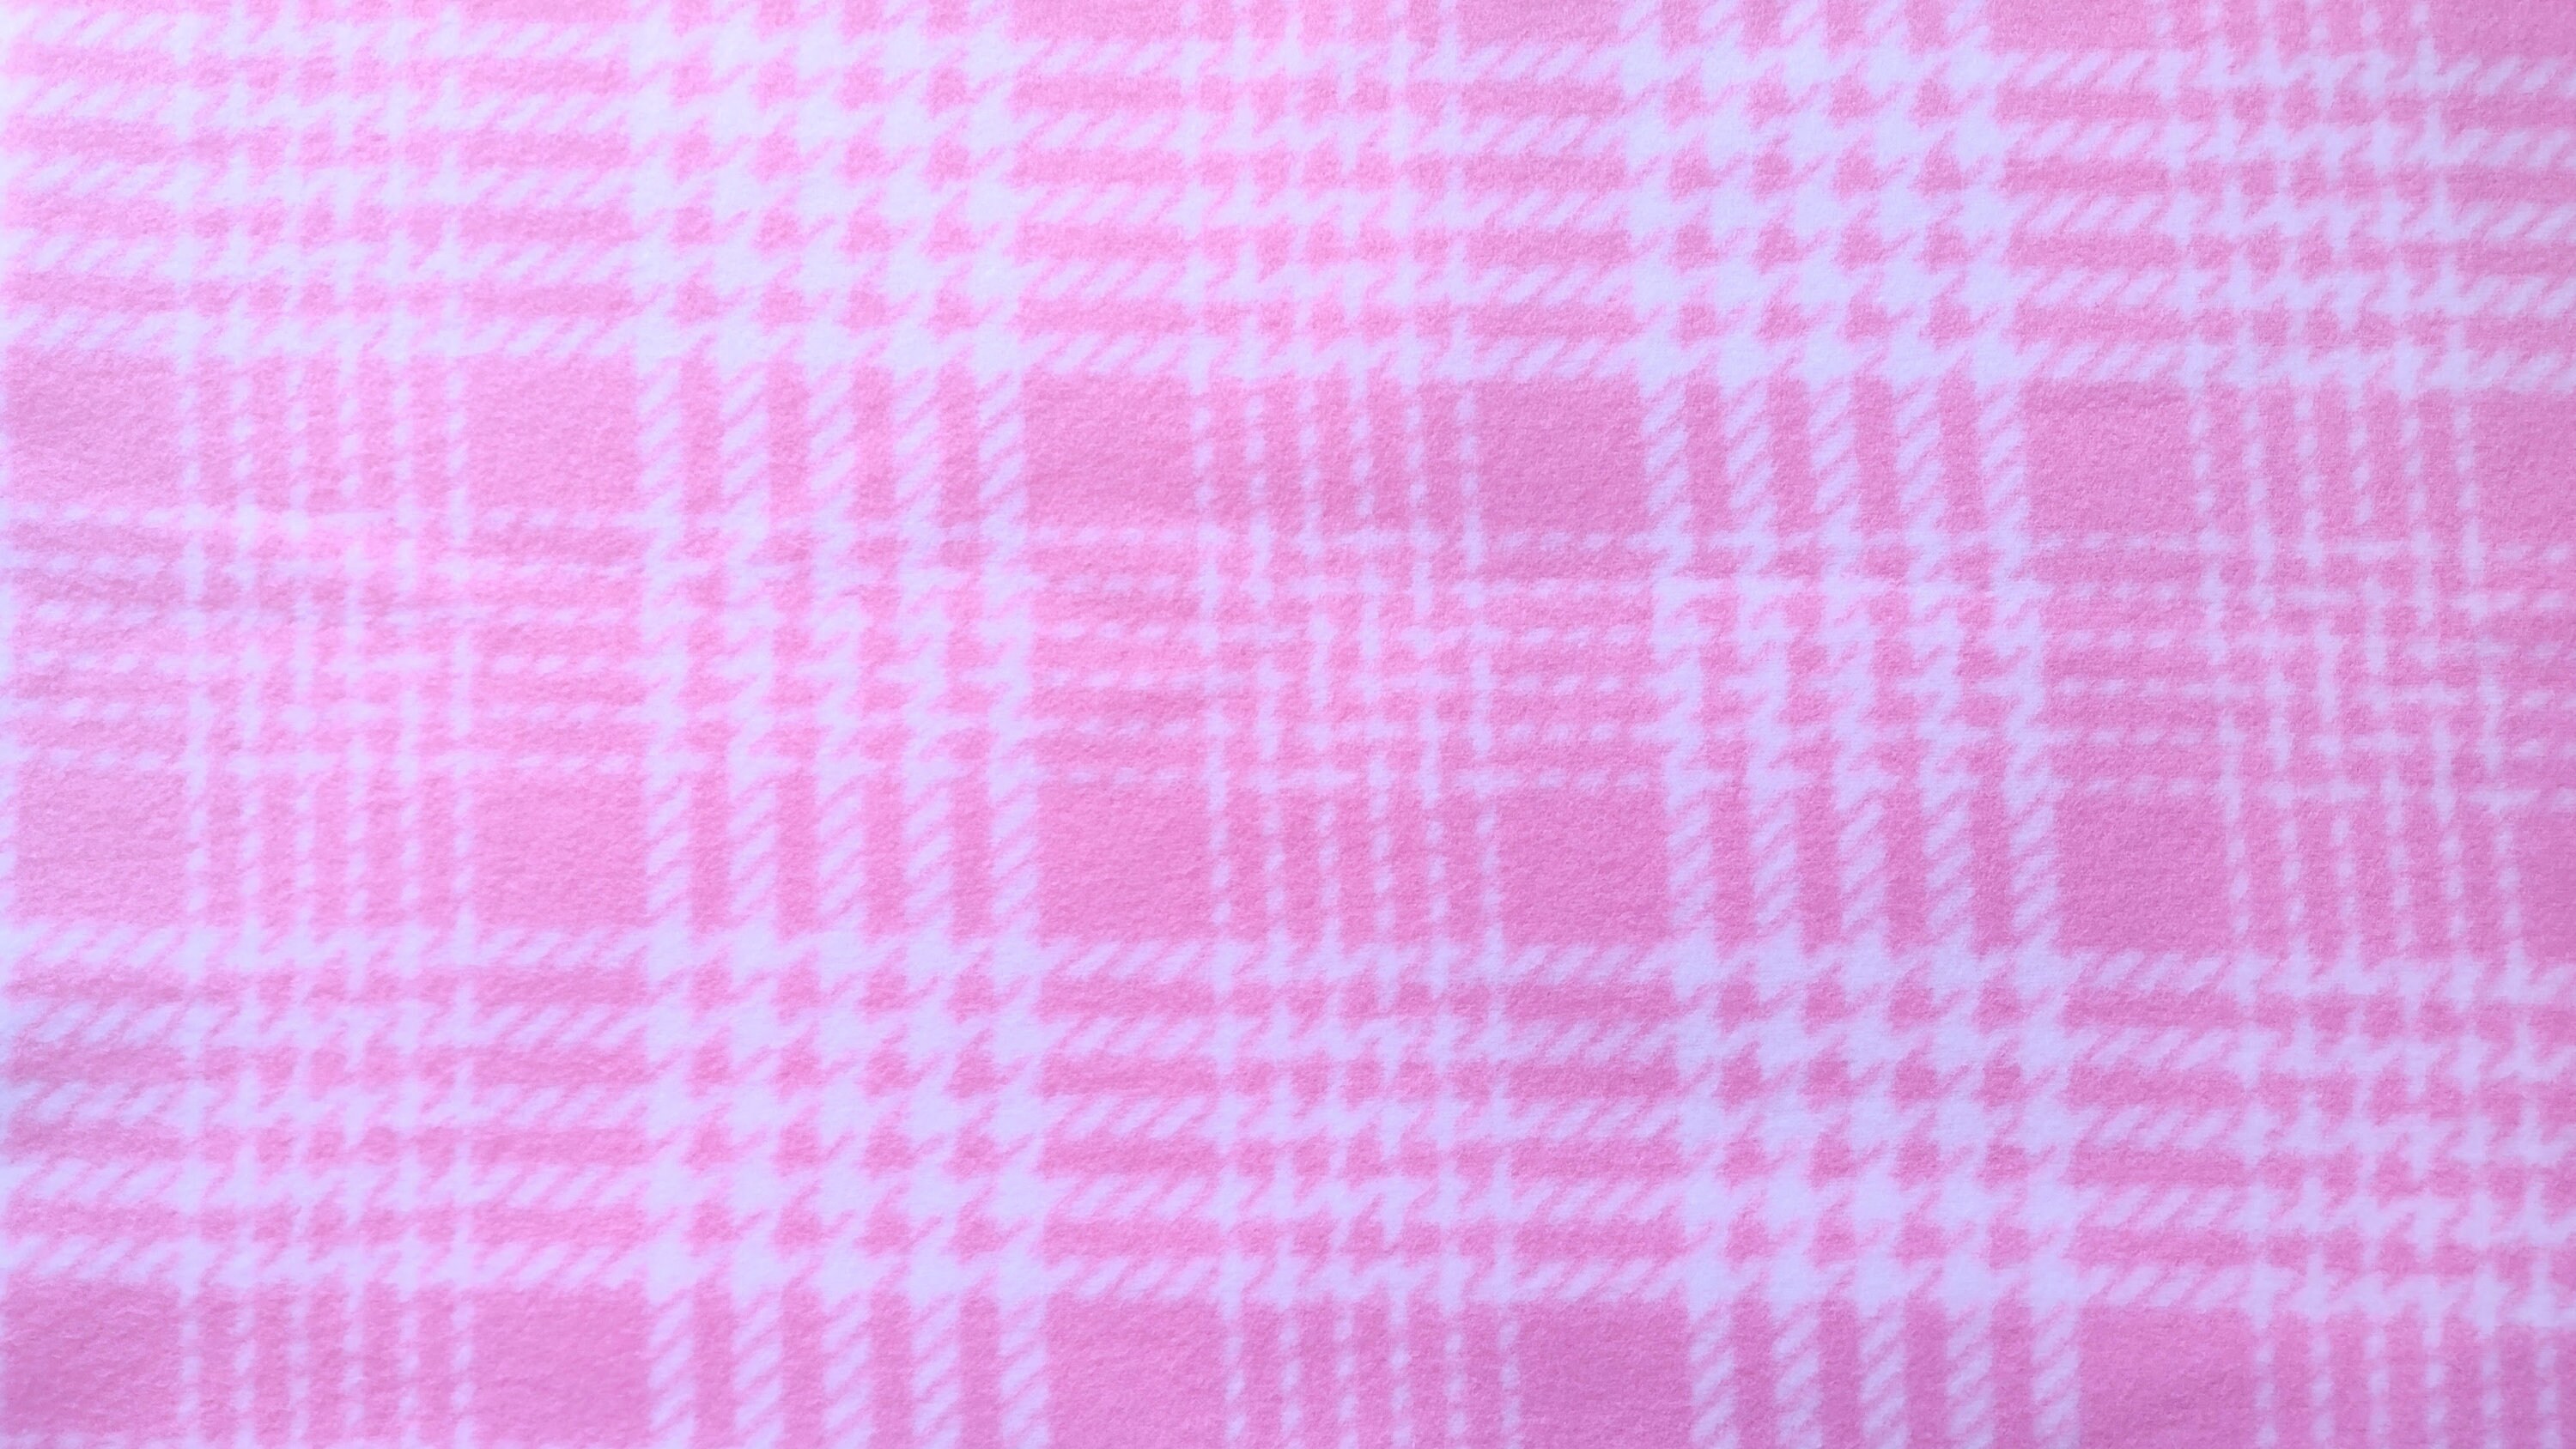 Pink Plaid Pajamas - Etsy